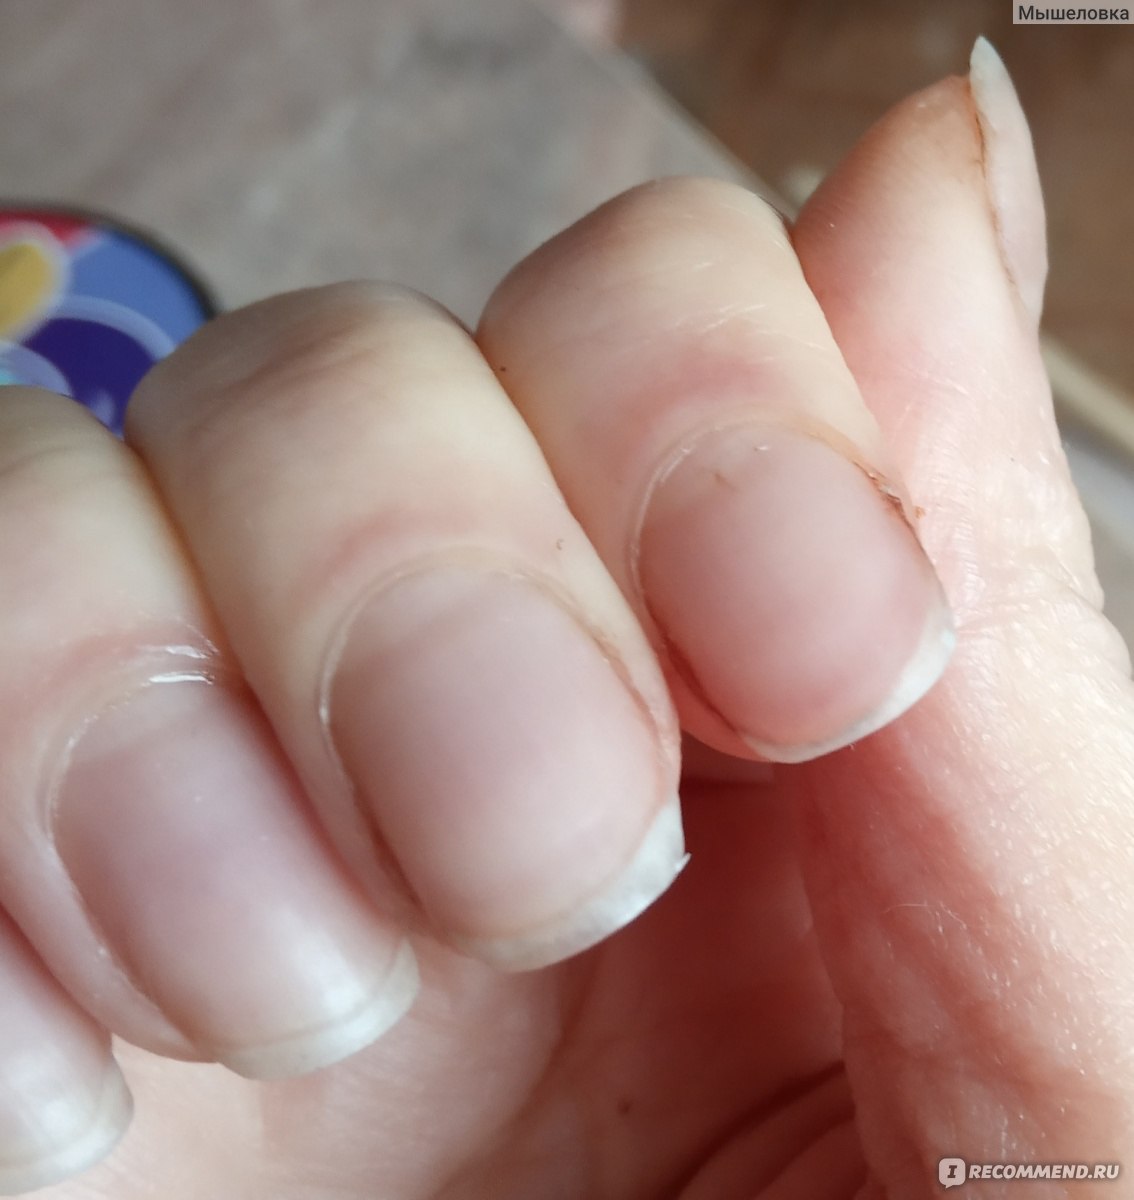 Маникюр без маникюра: как правильно ухаживать за ногтями, если ты их не красишь